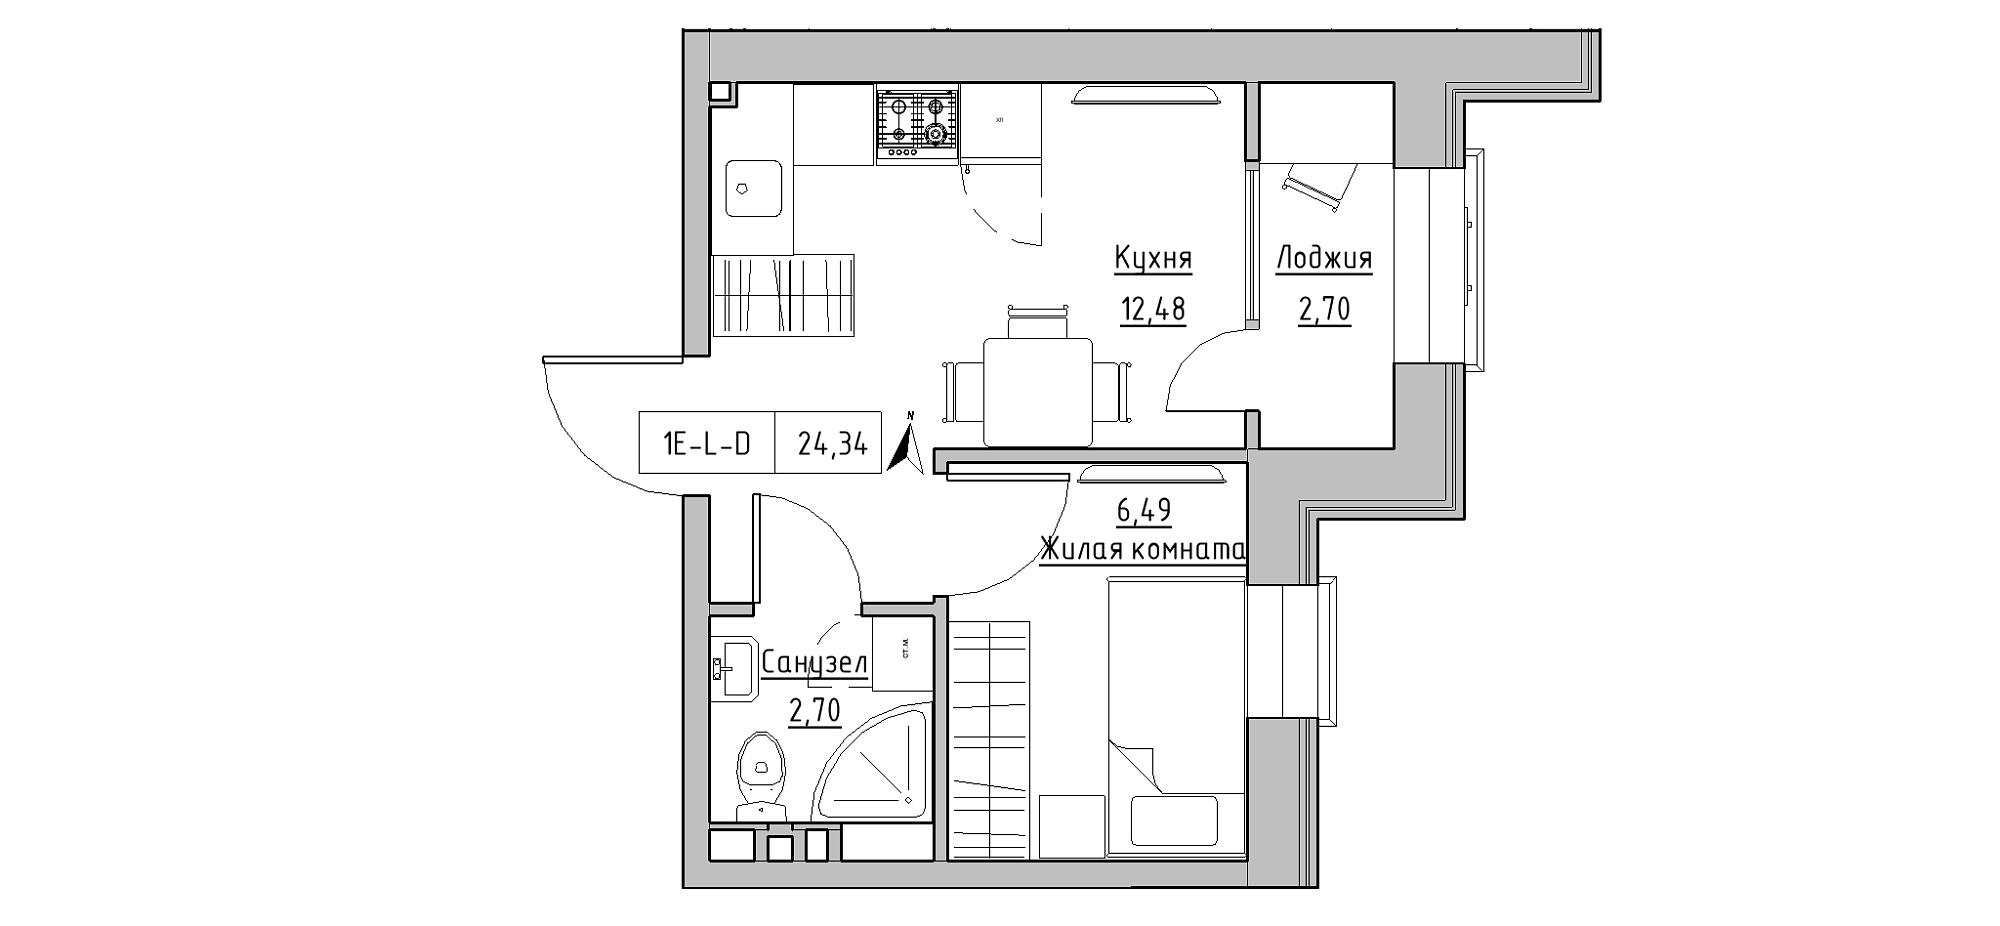 Планування 1-к квартира площею 24.34м2, KS-020-02/0015.